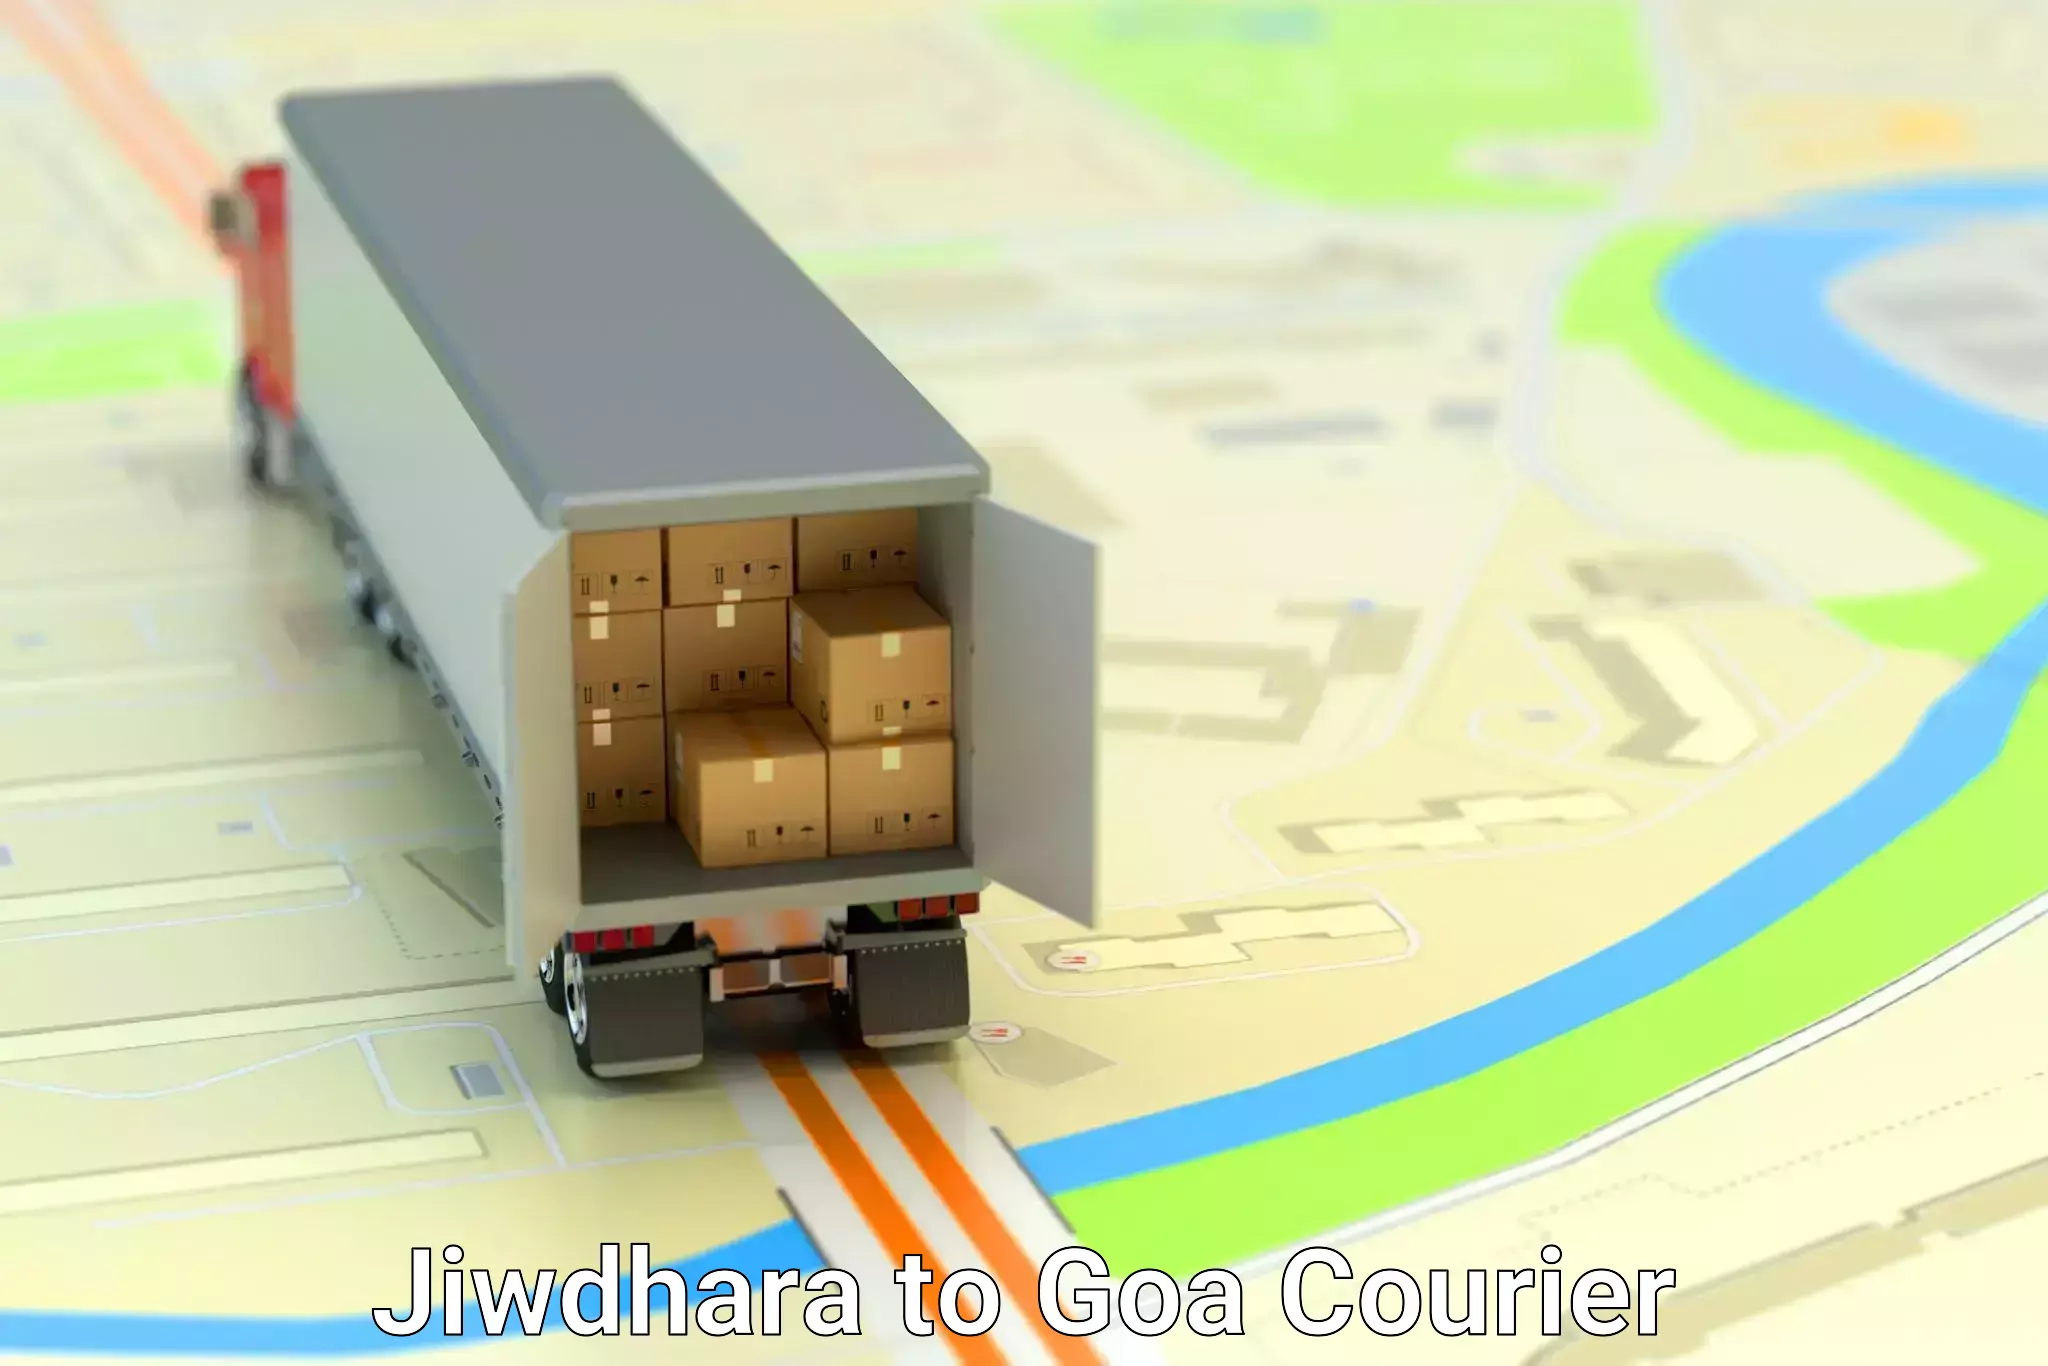 Furniture moving solutions in Jiwdhara to Ponda